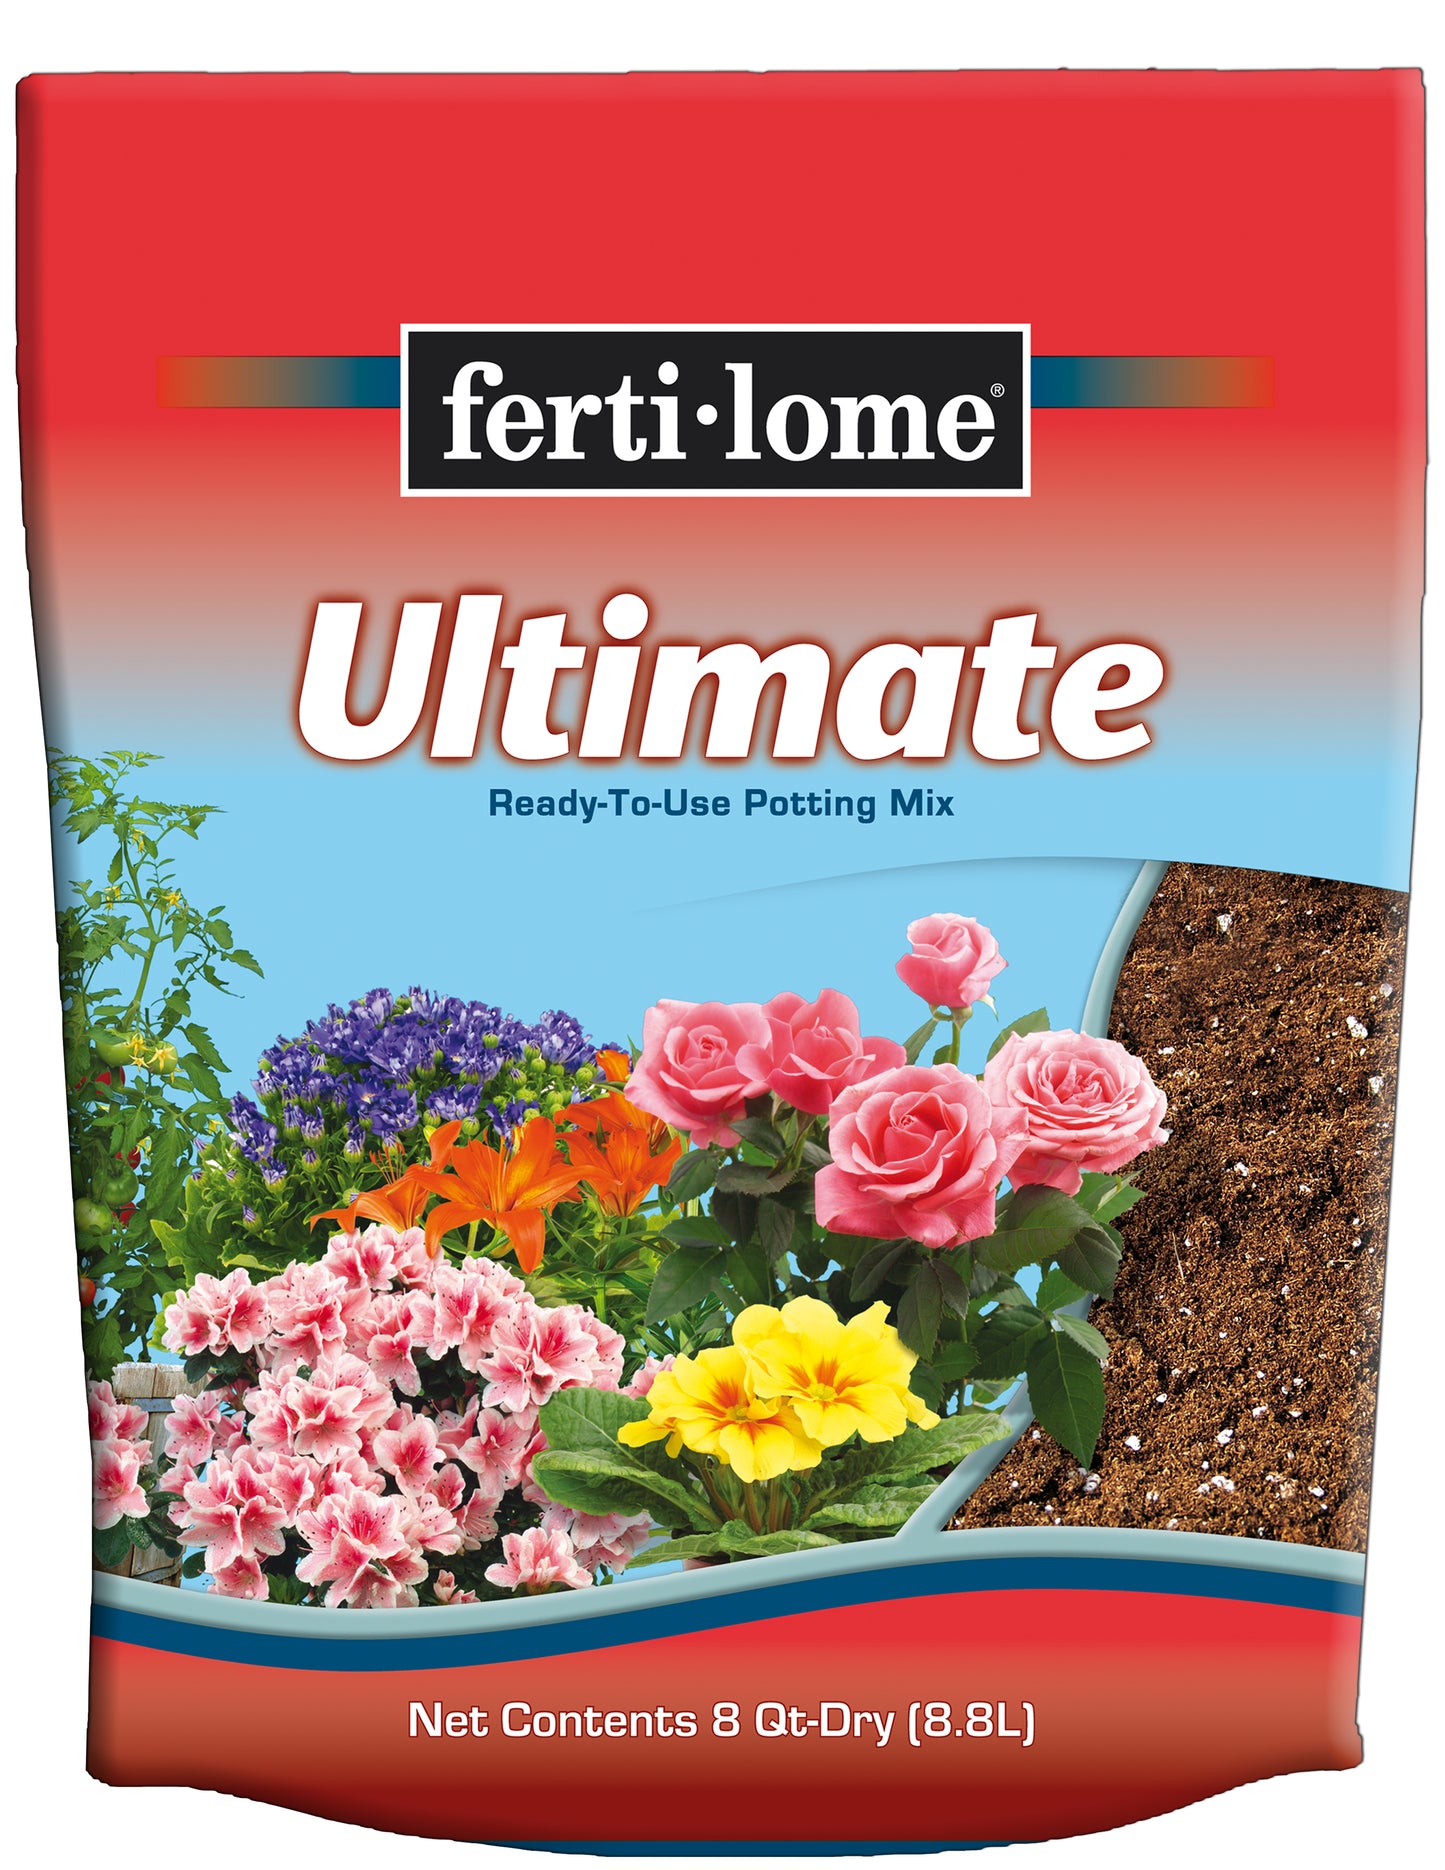 Fertilome Ultimate 8 Qt Potting Soil